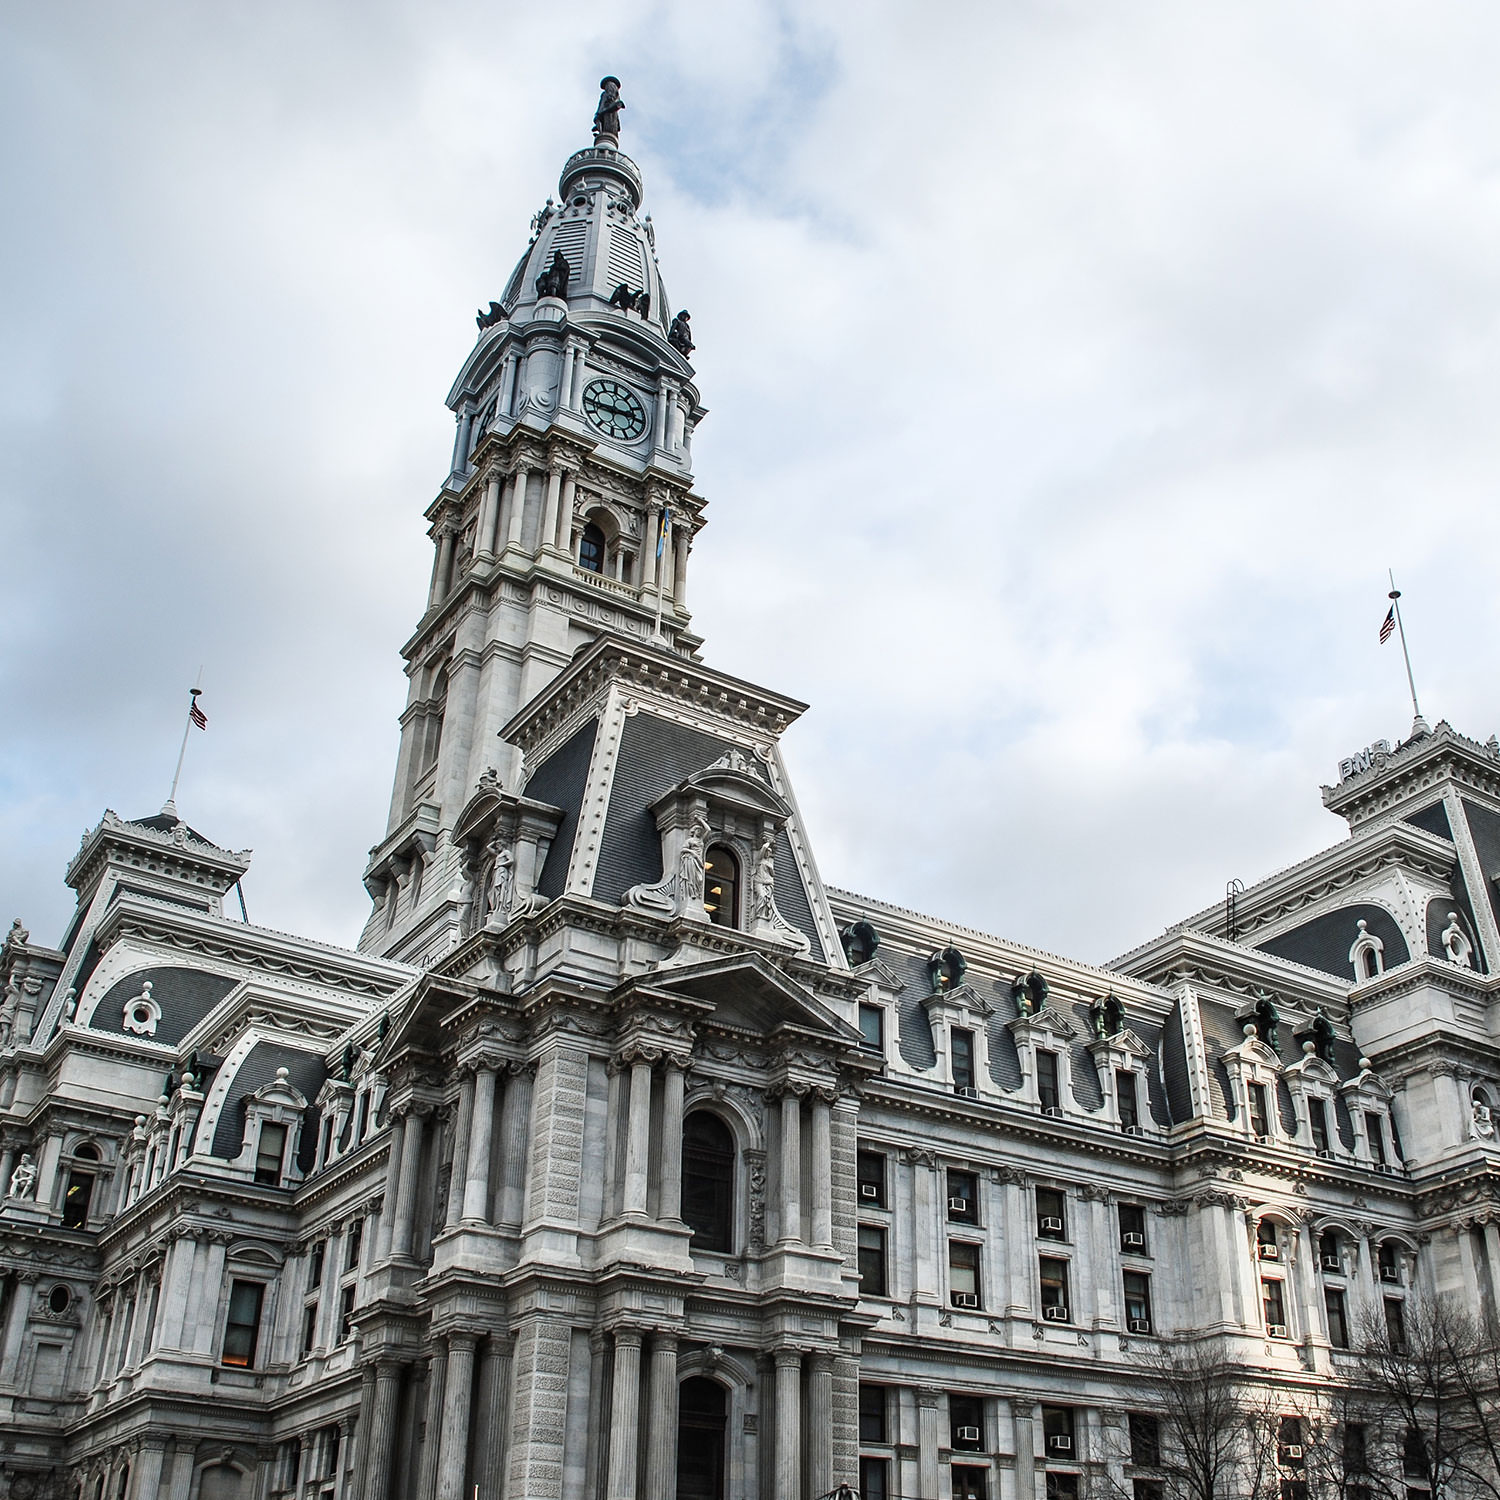 The City hall in Philadelphia